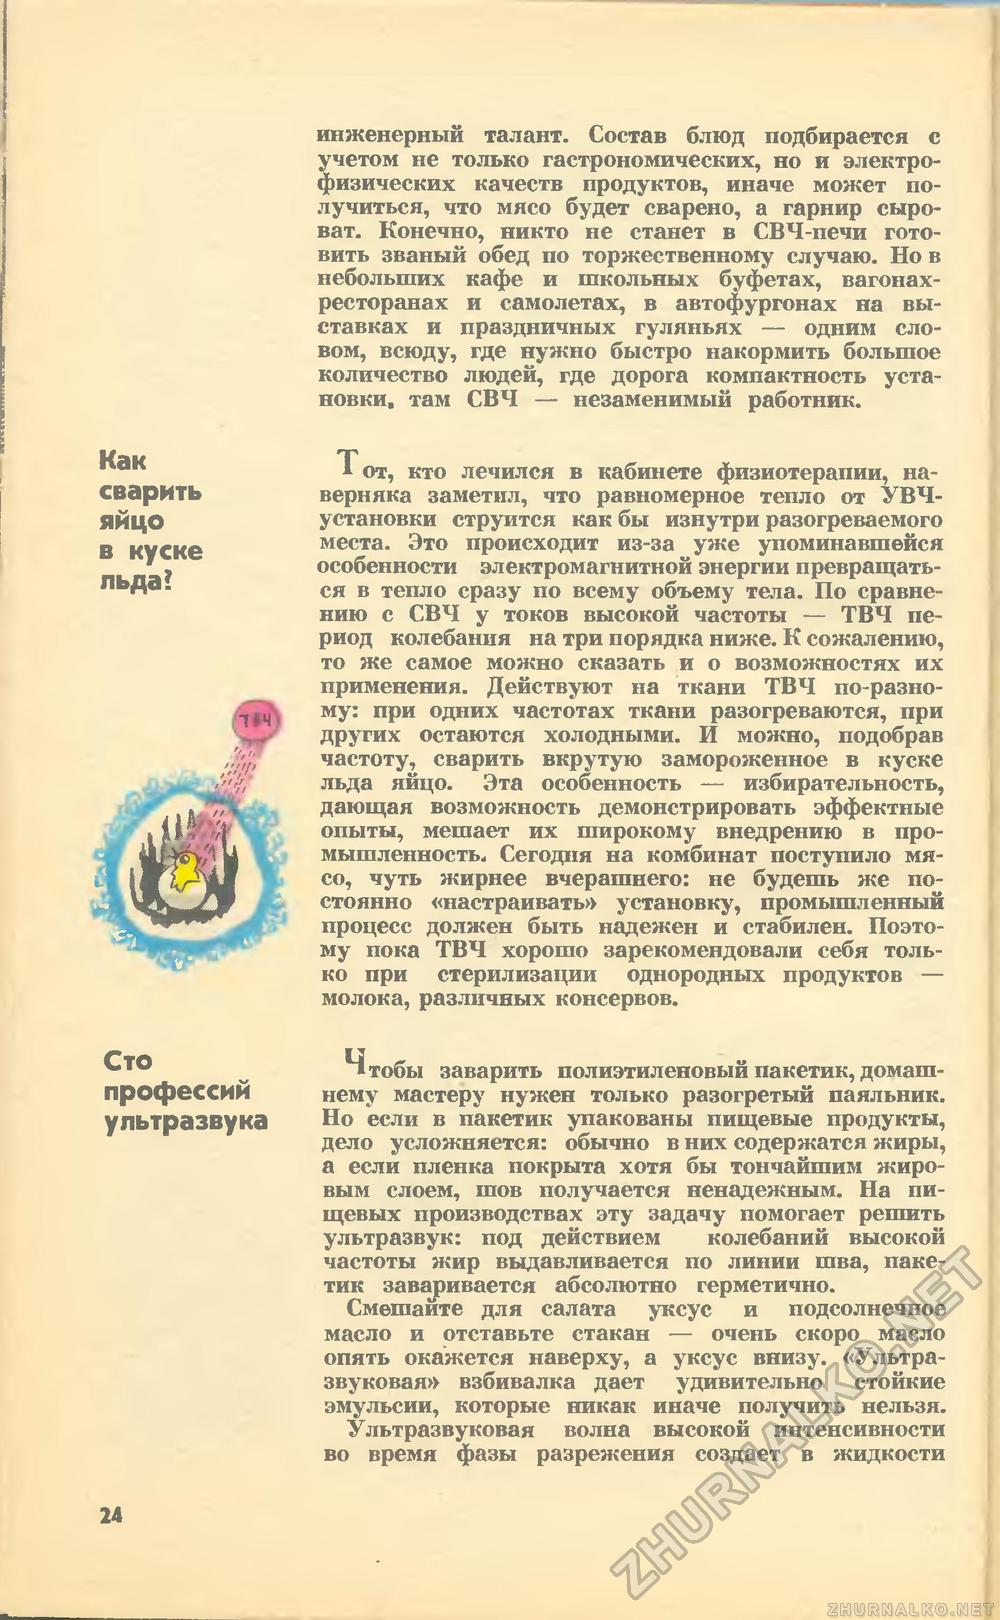   1973-04,  26